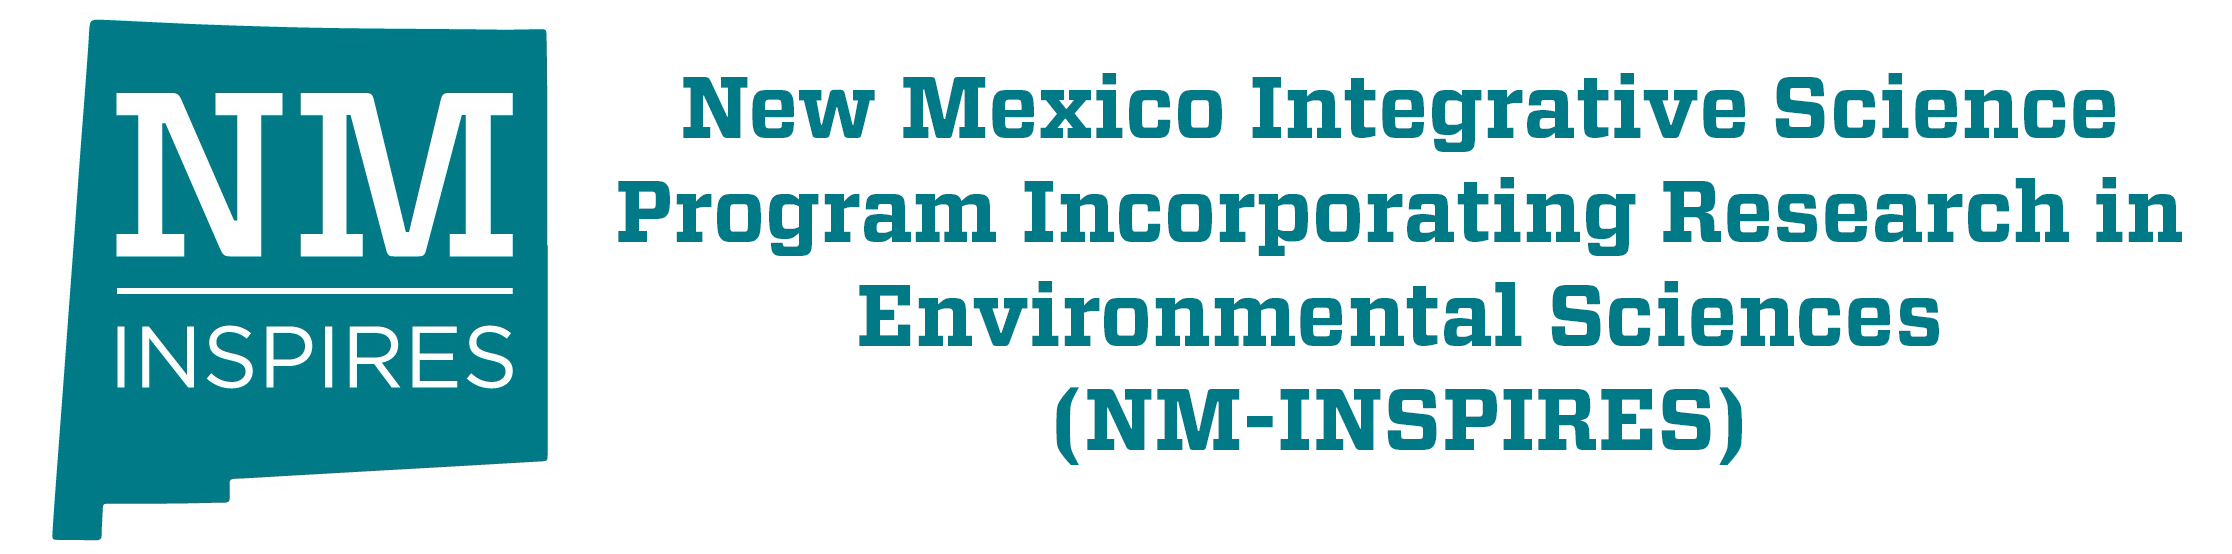 Programme de sciences intégratives du Nouveau-Mexique intégrant la recherche en sciences de l'environnement (NM-INSPIRES)